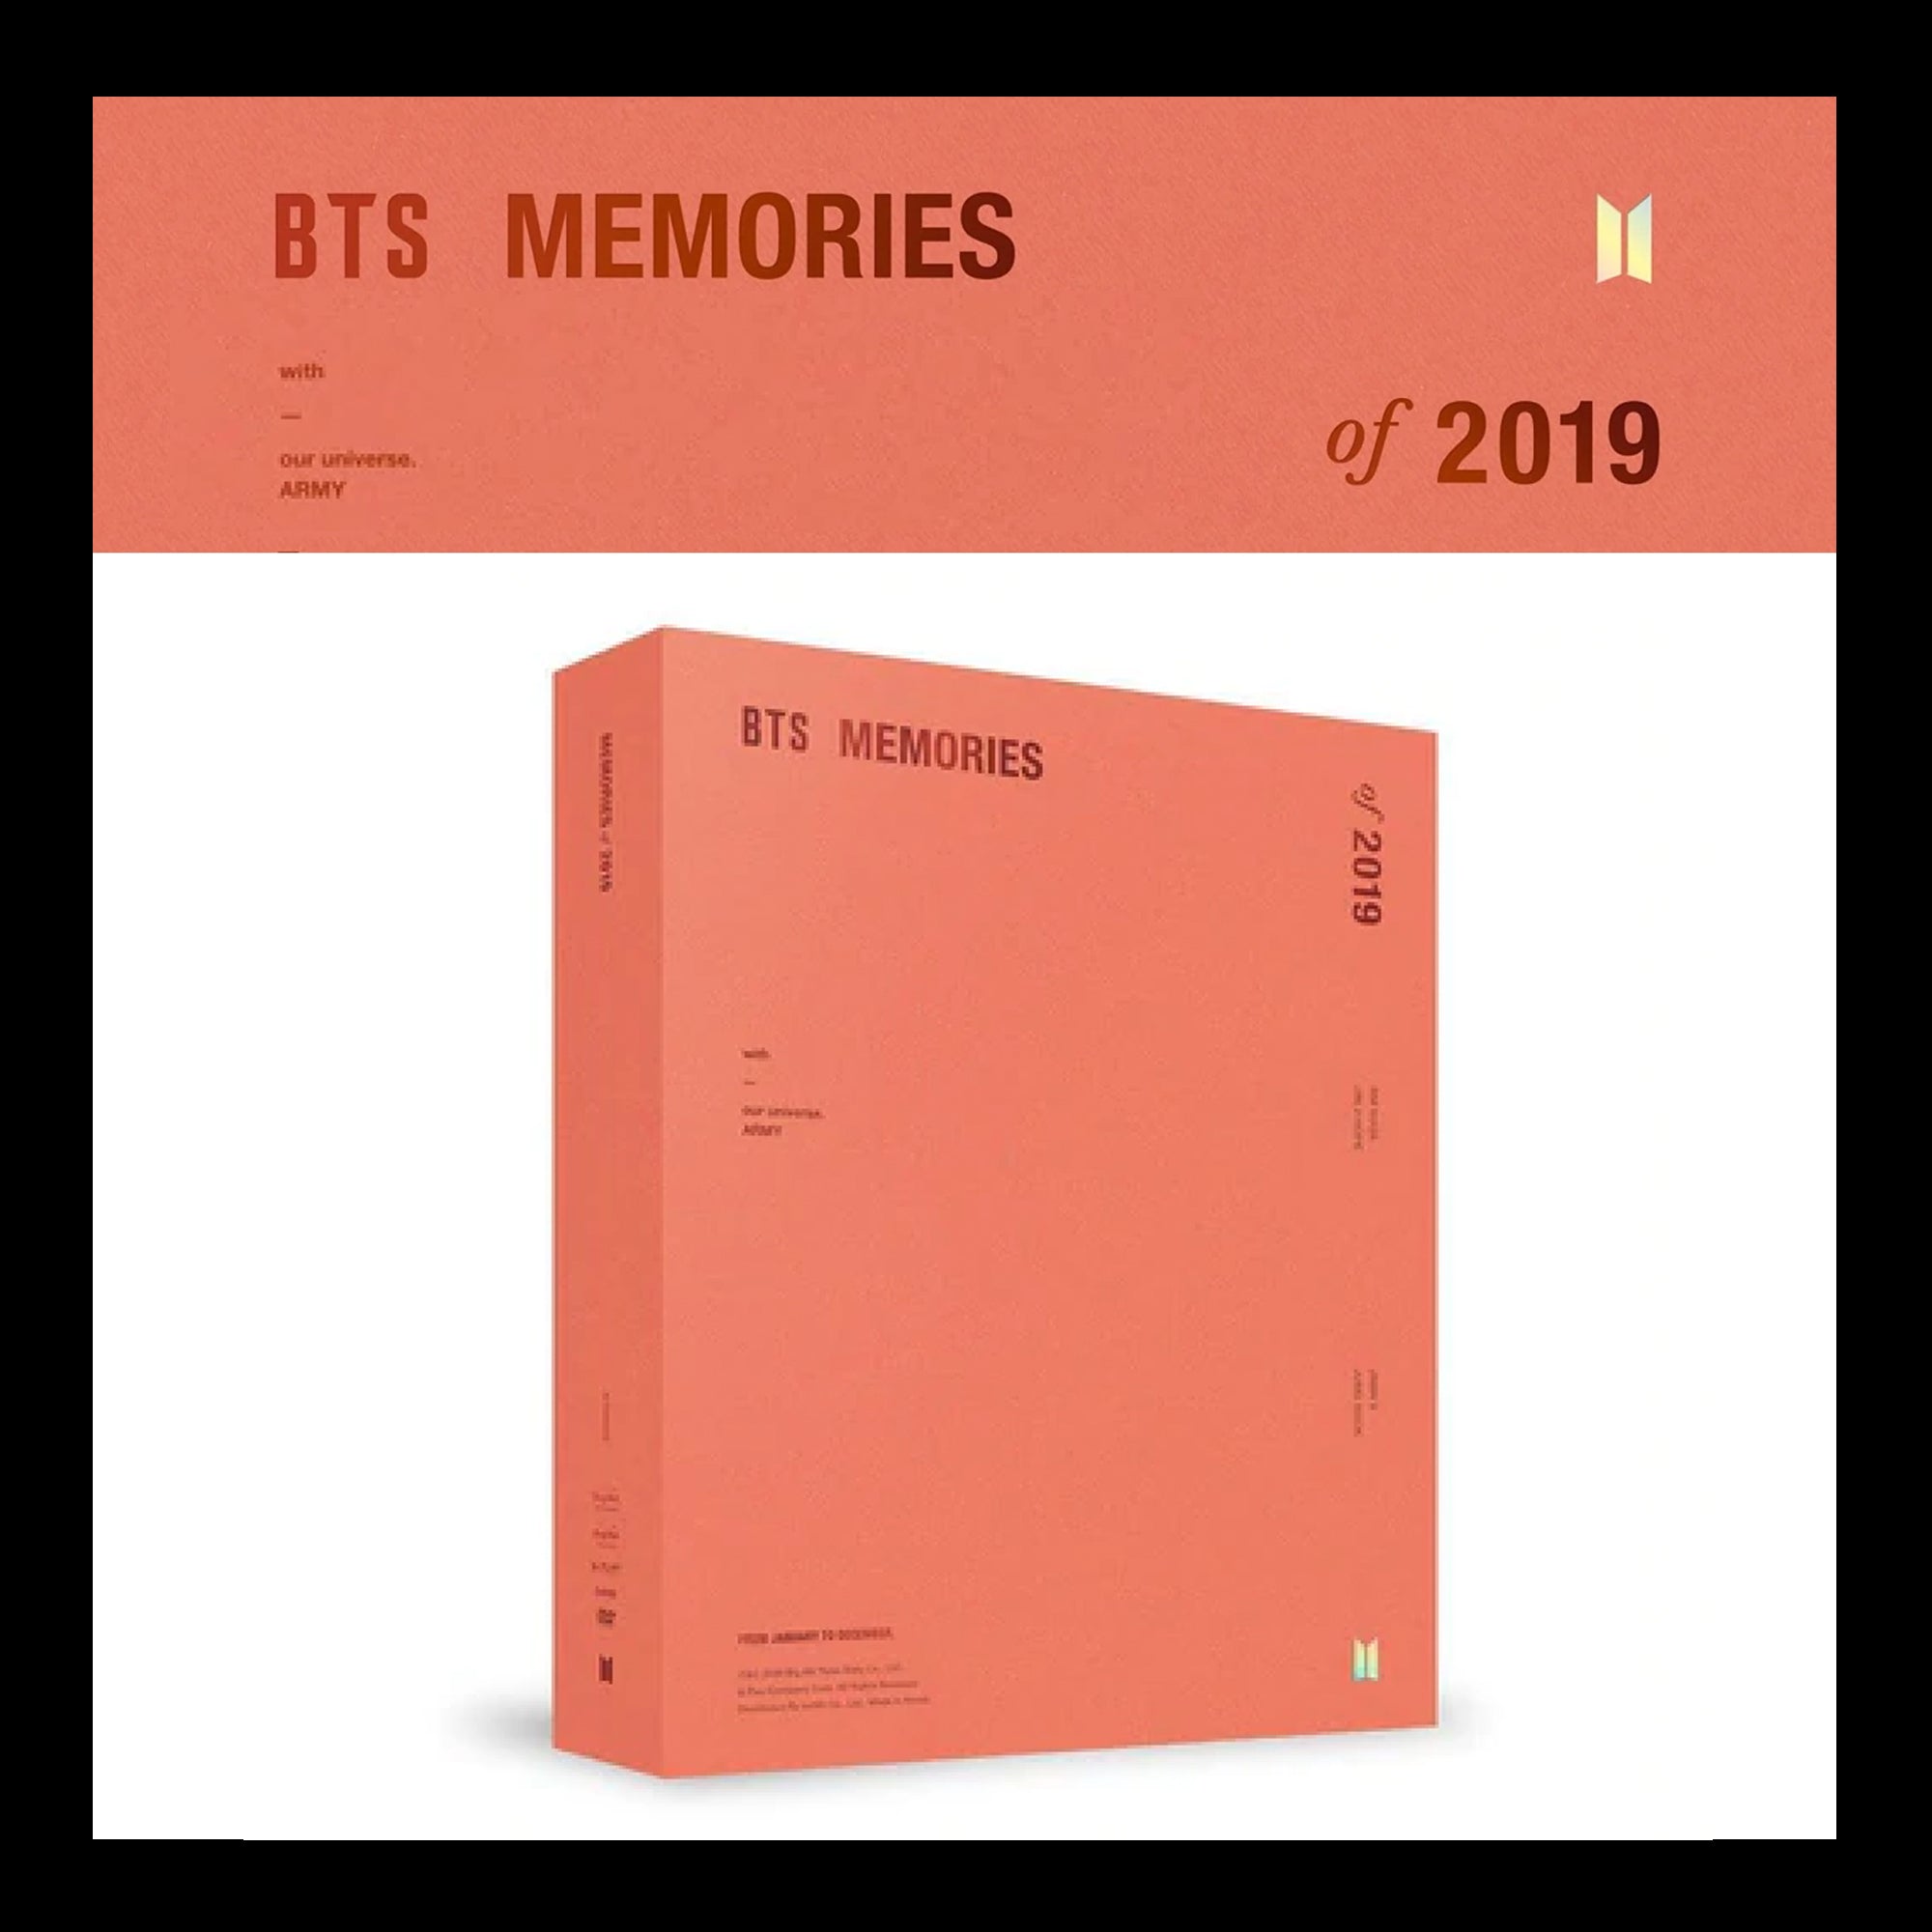 BTS - BTS MEMORIES OF 2019 DVD